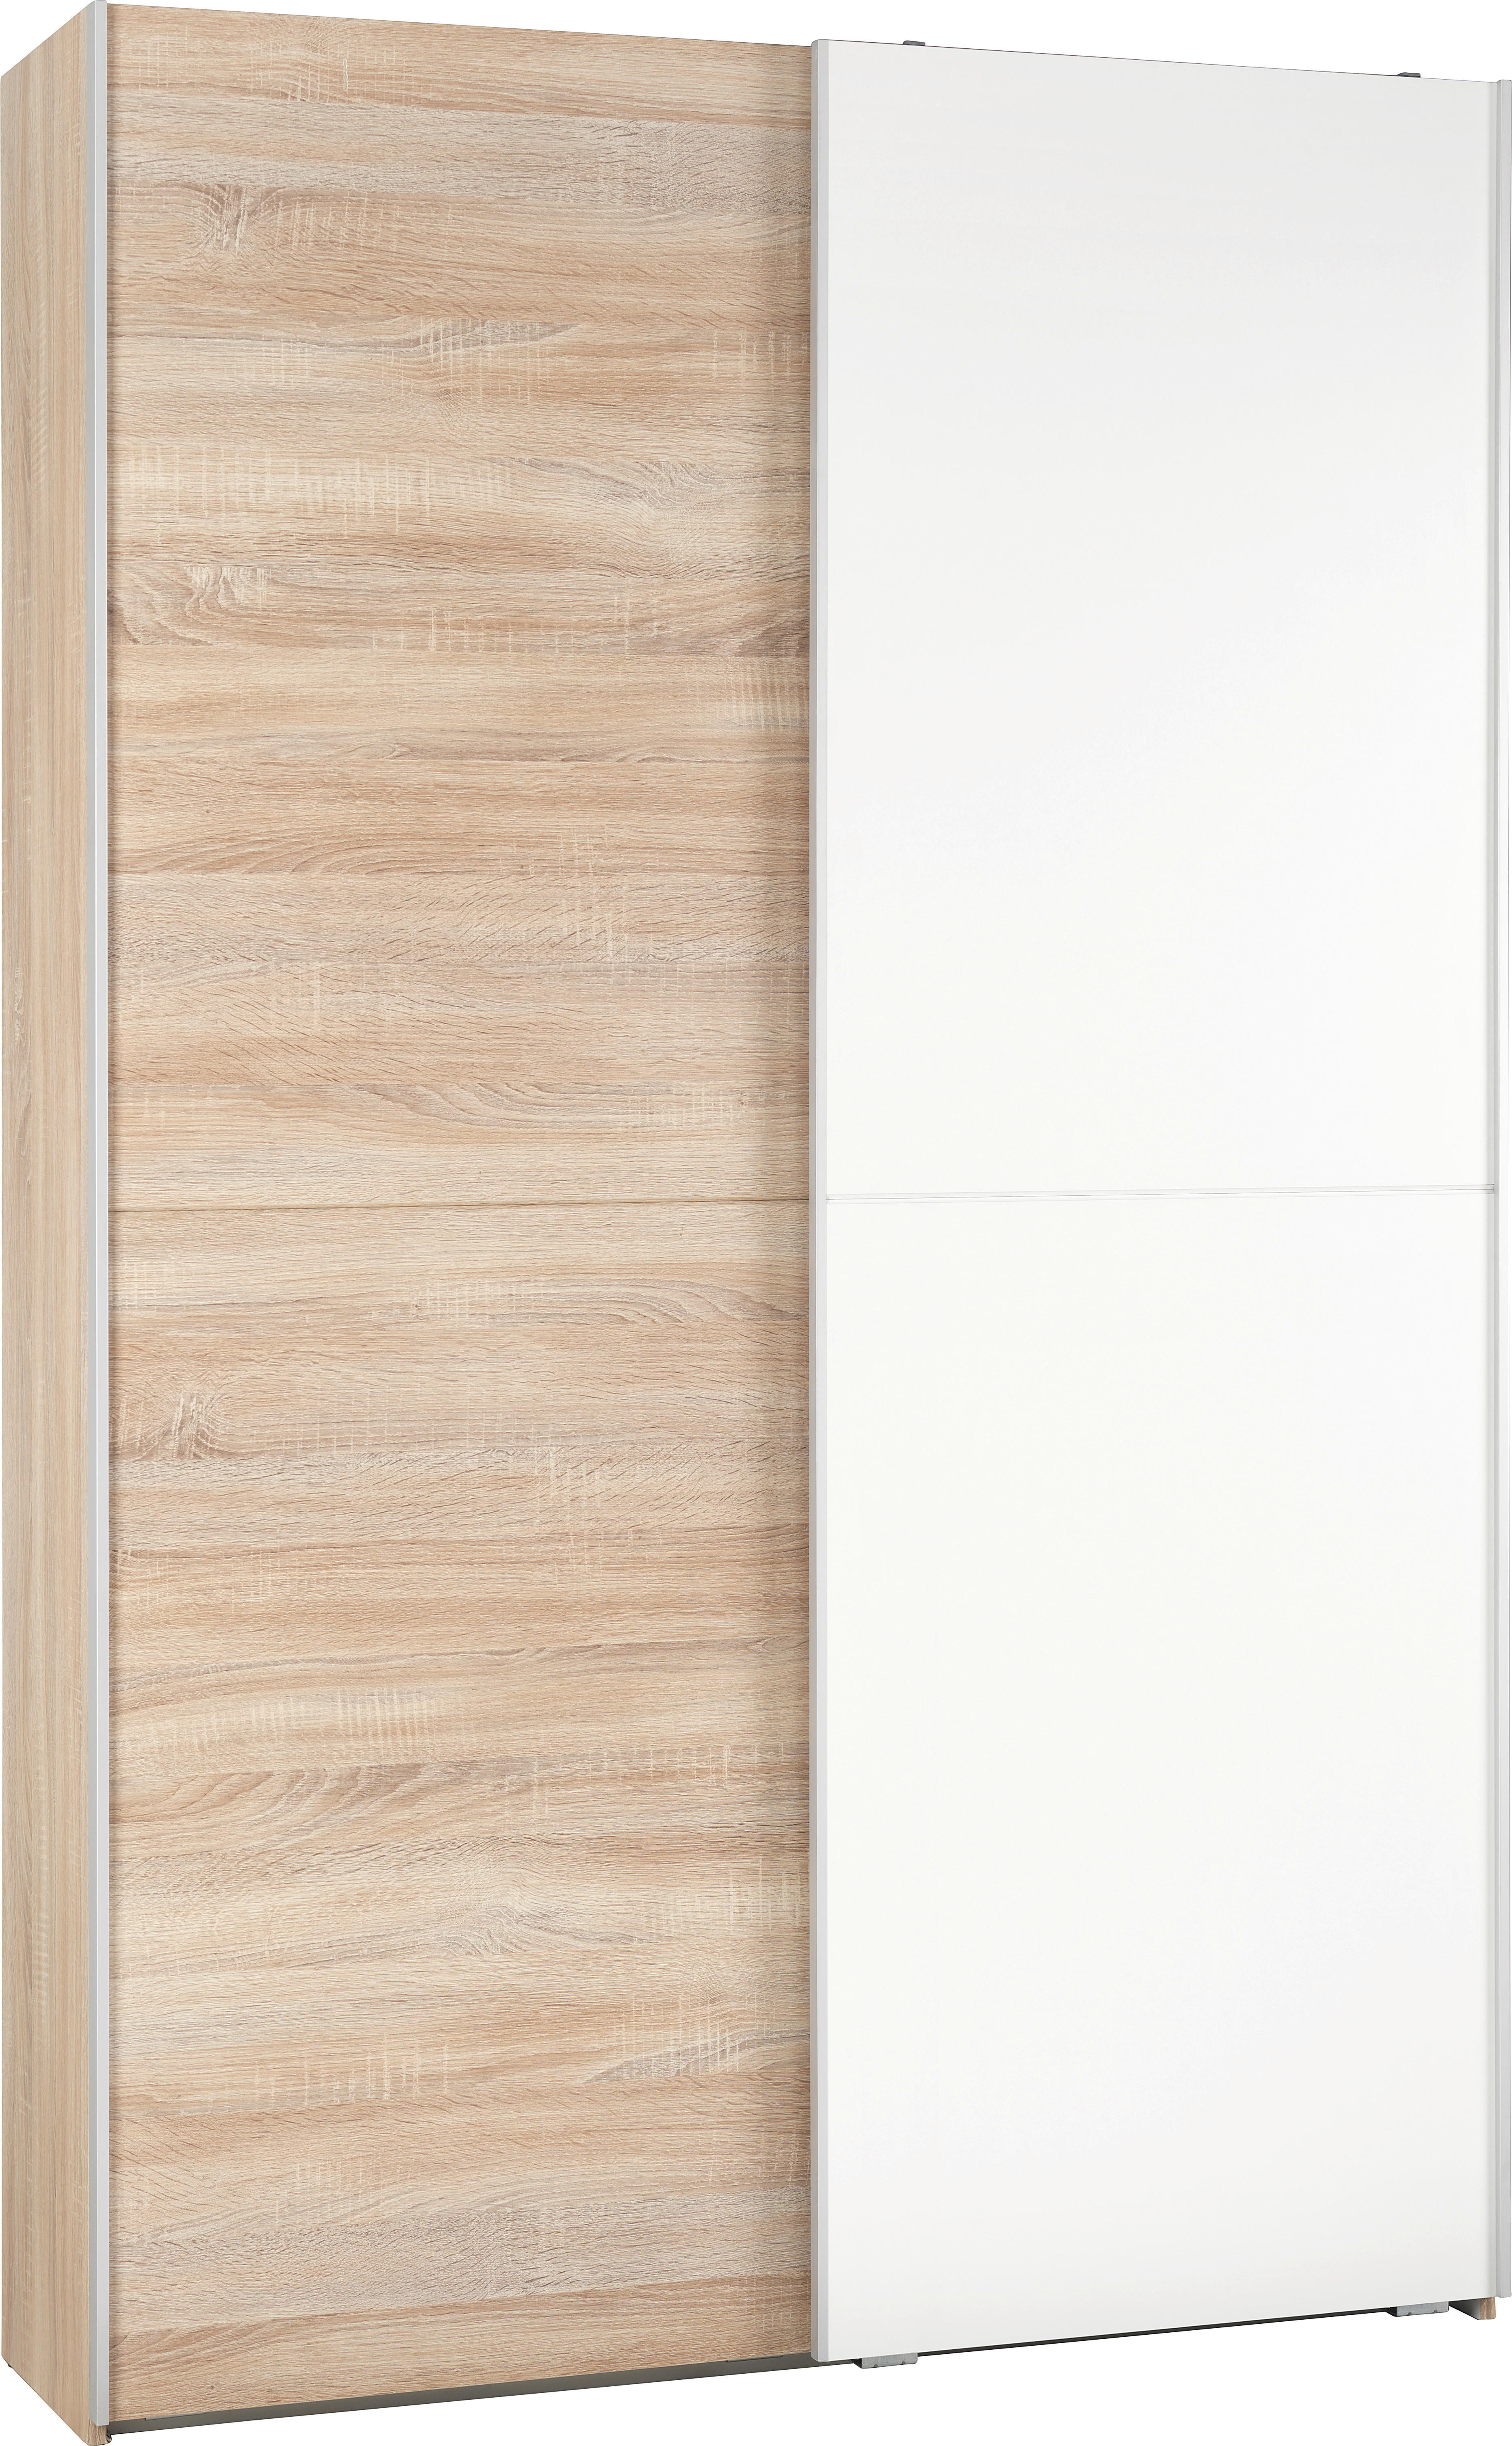 MEHRZWECKSCHRANK Weiß, Sonoma Eiche  - Alufarben/Weiß, KONVENTIONELL, Holzwerkstoff (125/195/38cm) - Livetastic